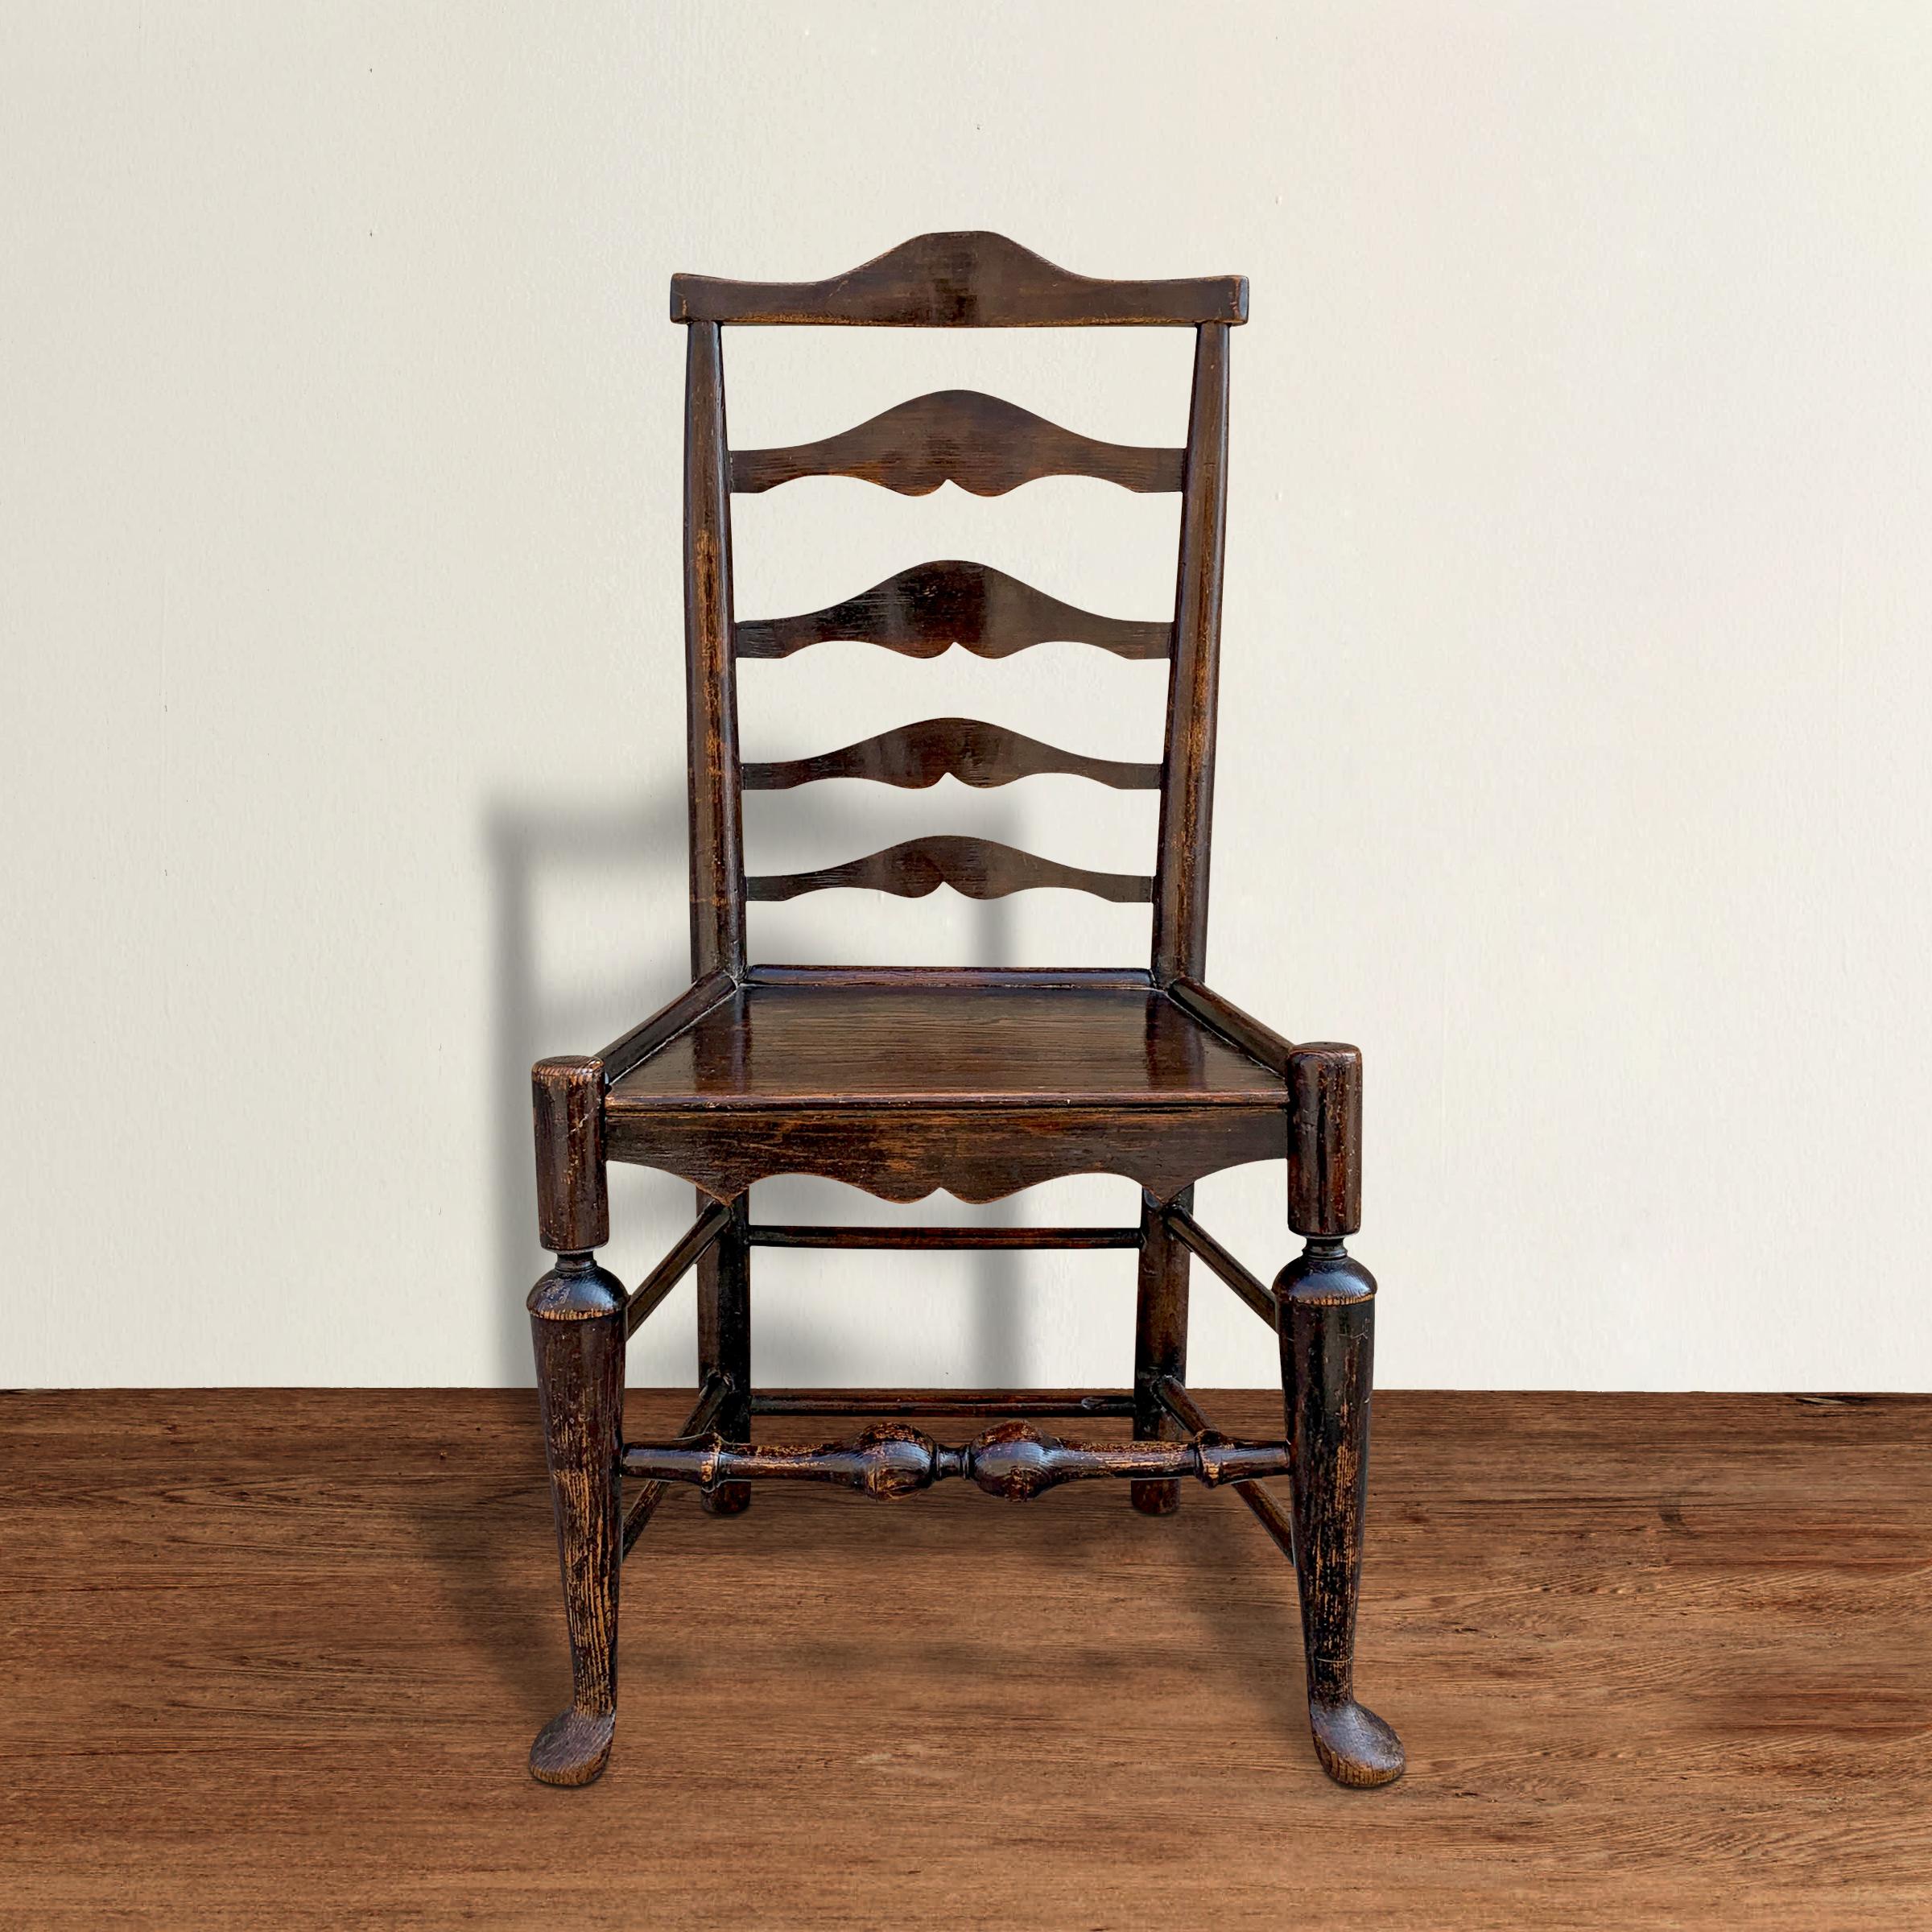 Fantastique chaise d'appoint en chêne du XVIIIe siècle, de style George III, à dossier en échelle, avec de superbes détails, notamment des dosserets incurvés, une assise en planches massives, des pieds tournés en trompette qui se terminent par des